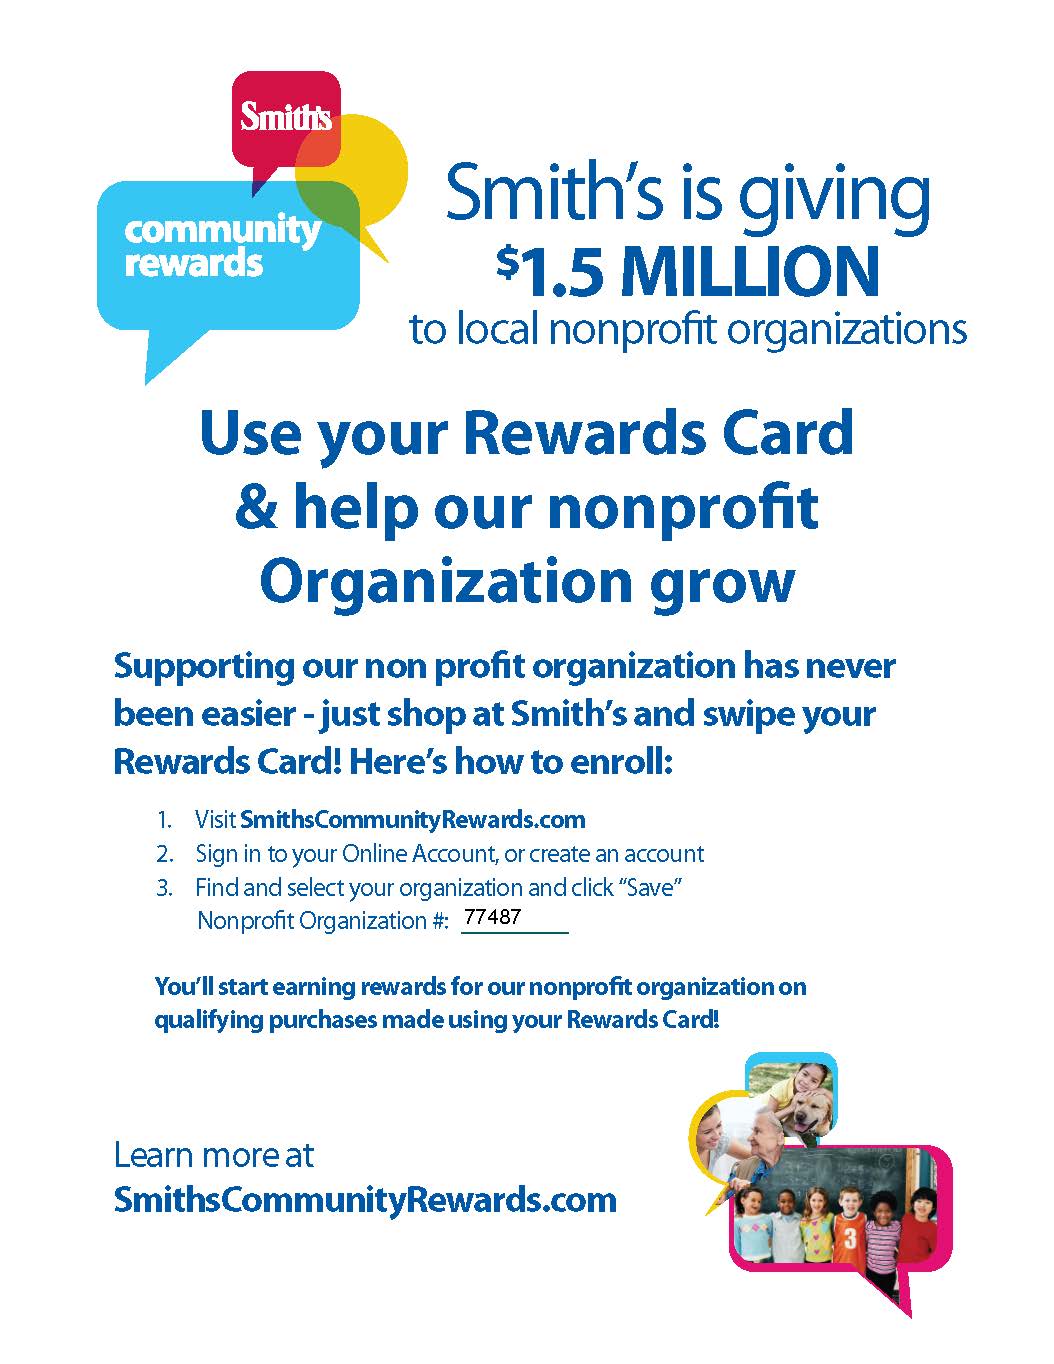 Smith's Community Rewards Program - Method 1